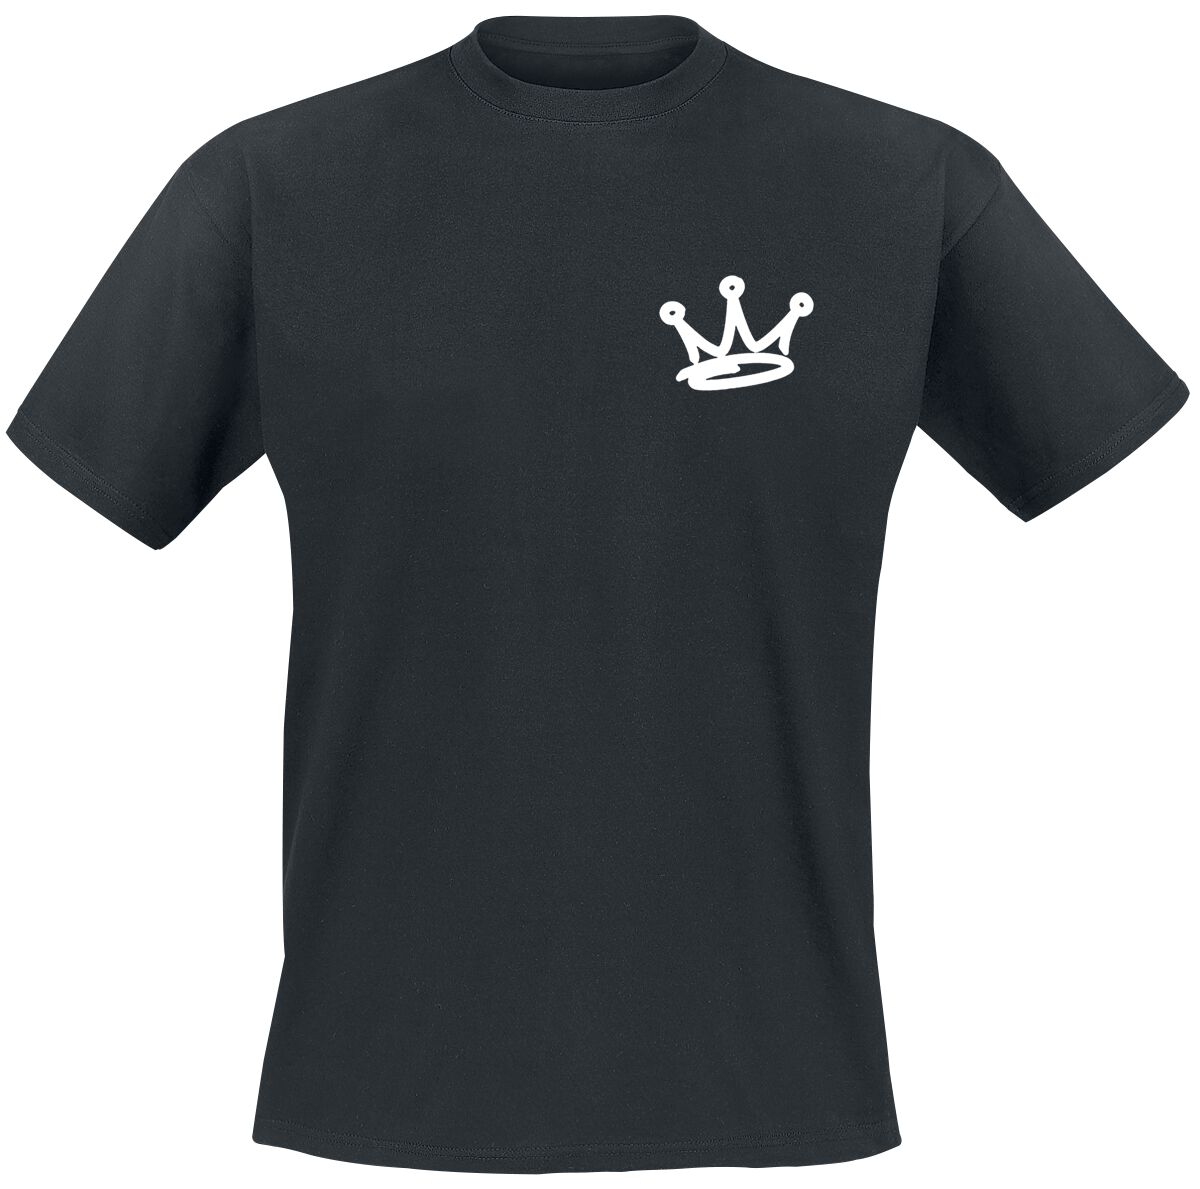 Naughty by Nature T-Shirt - Graffiti Logo - S bis XXL - für Männer - Größe S - schwarz  - Lizenziertes Merchandise!